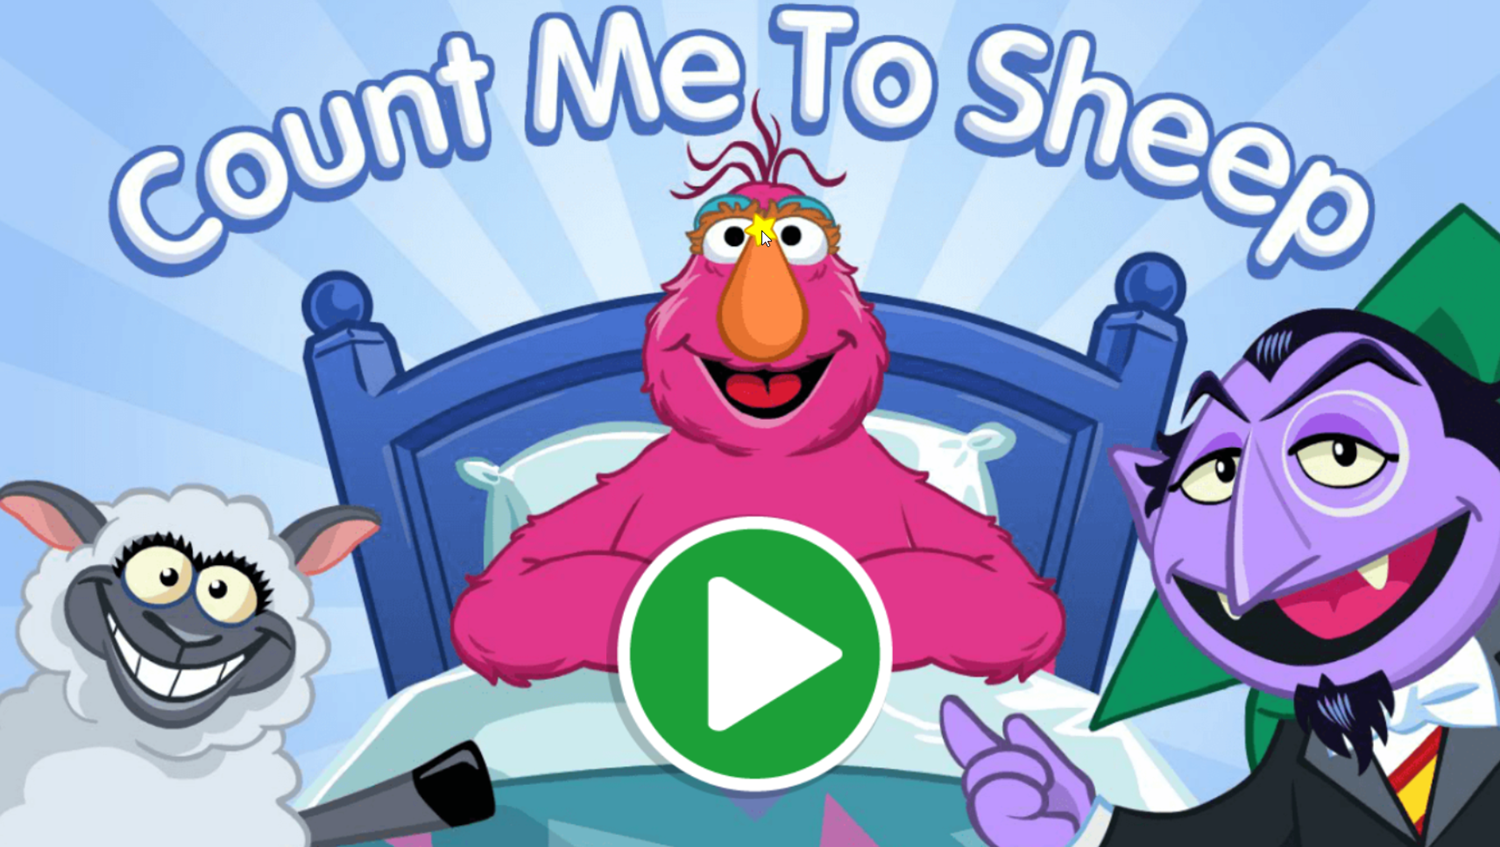 Sesame Street Count Me To Sheep Game Welcome Screen Screenshot.